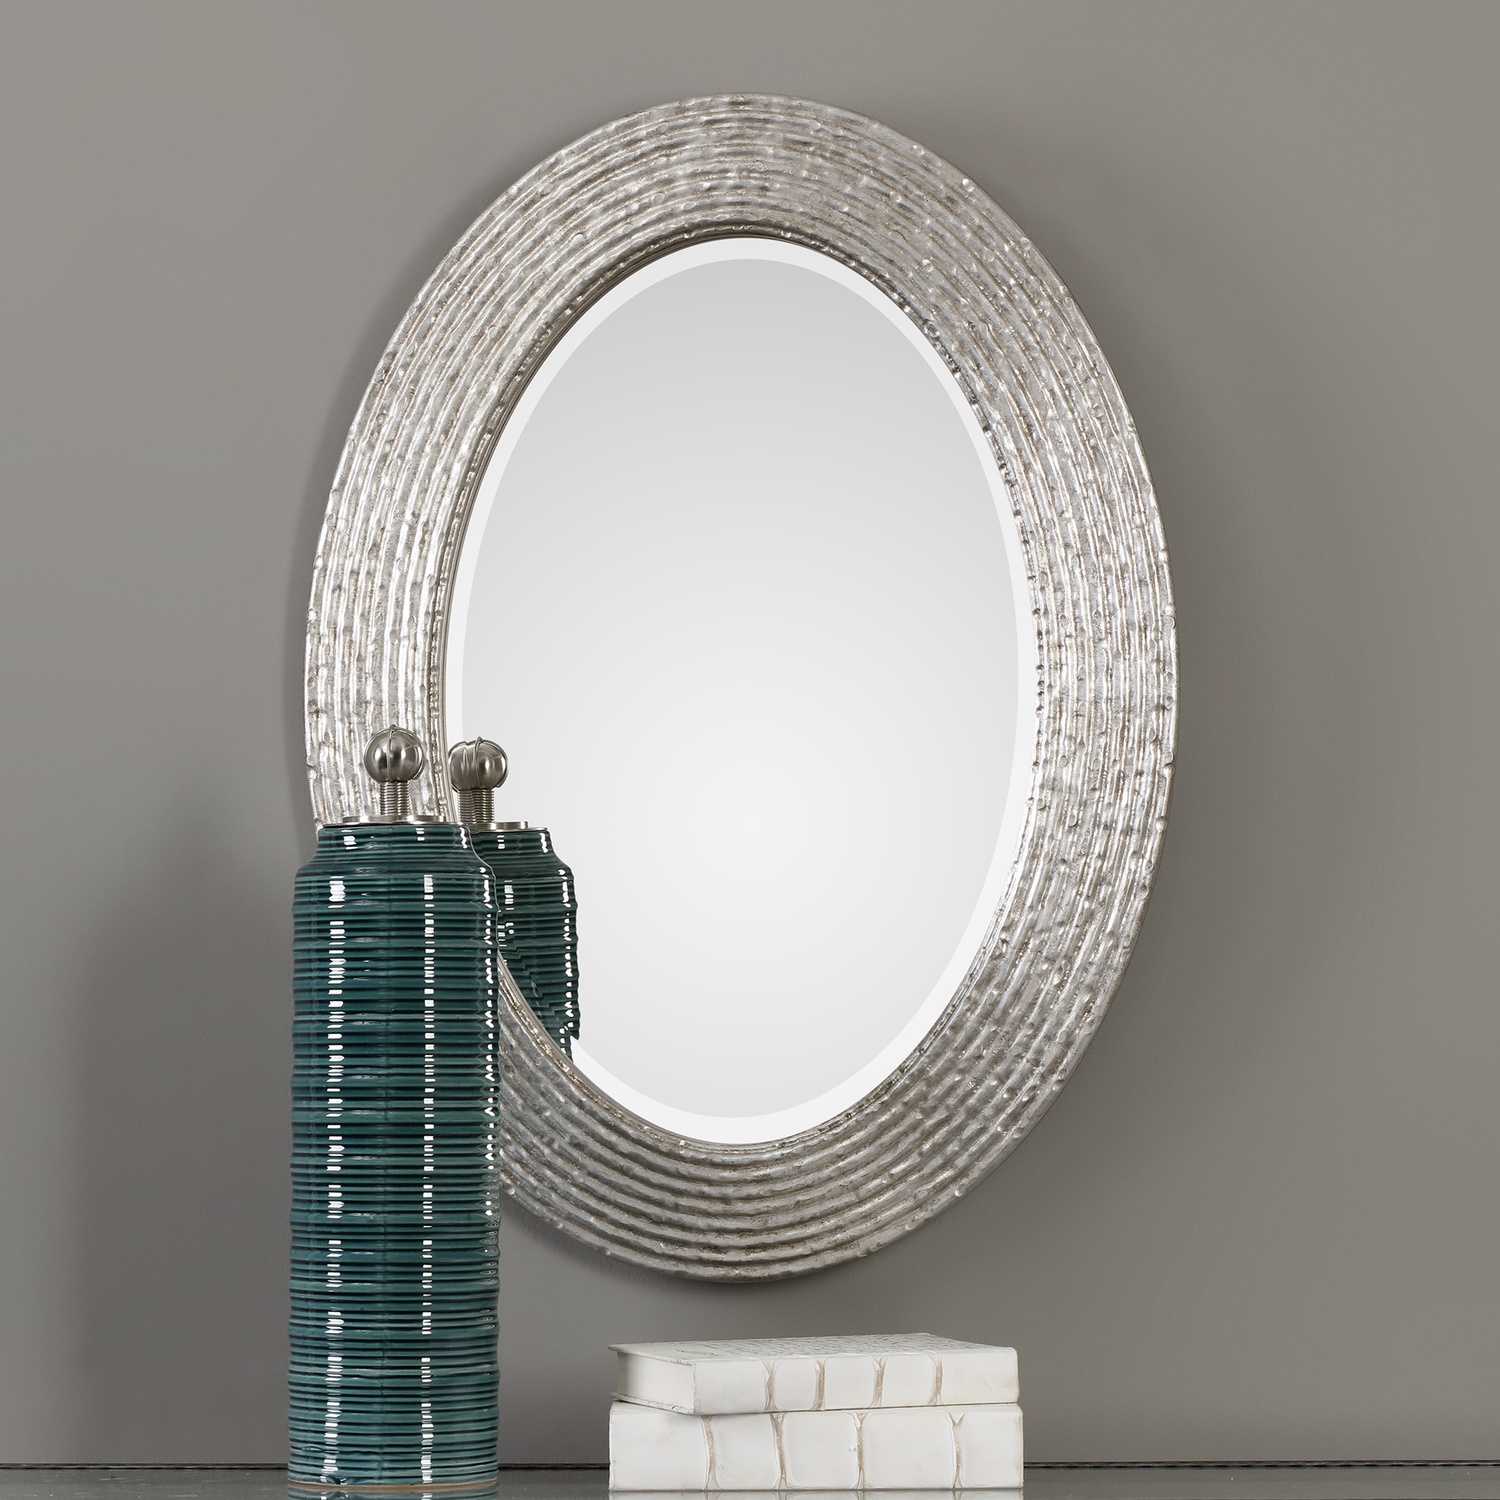 Conder-Oval Silver Mirror